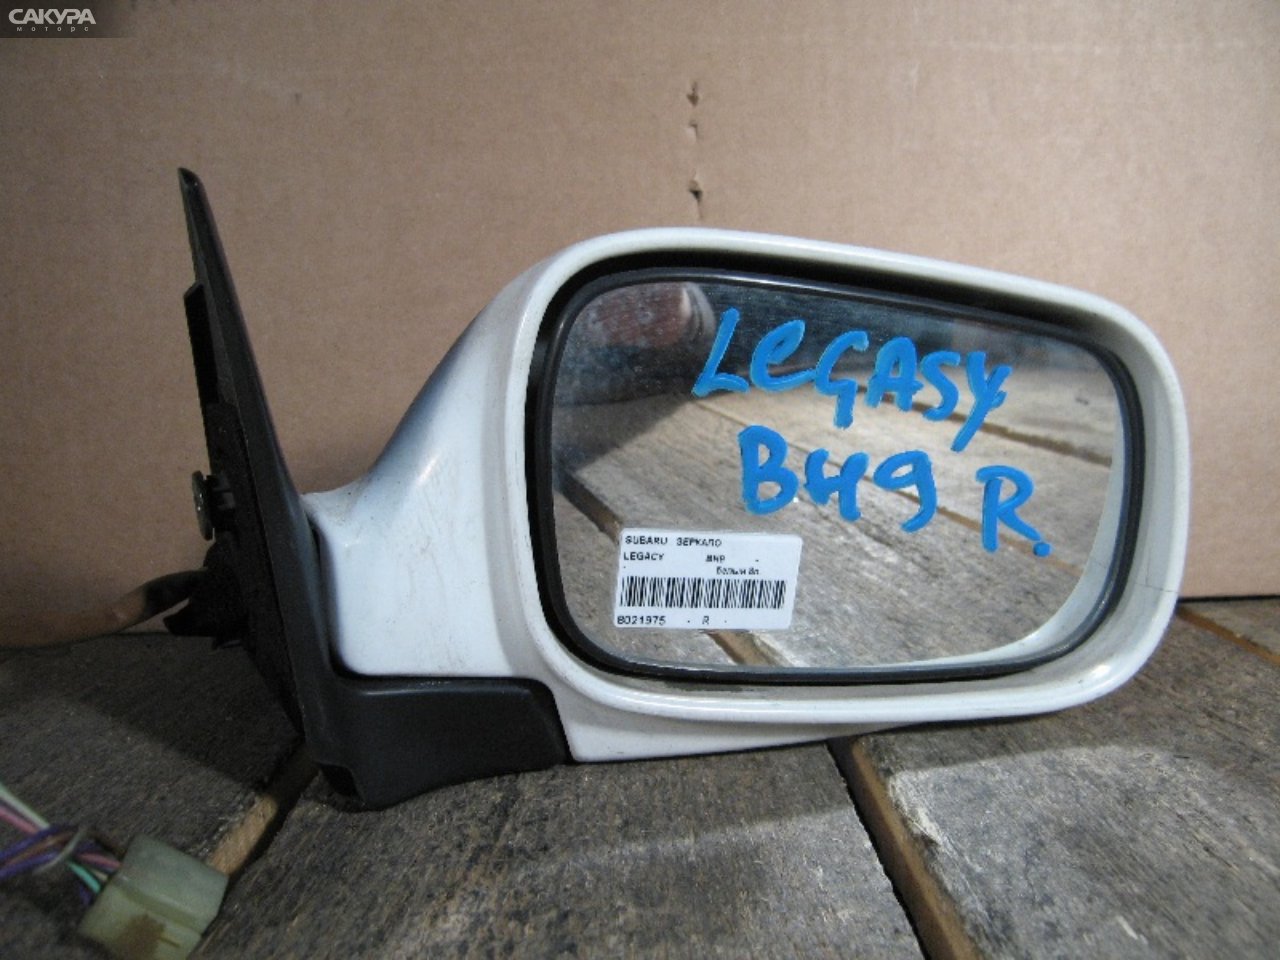 Зеркало боковое правое Subaru Legacy BH9: купить в Сакура Абакан.